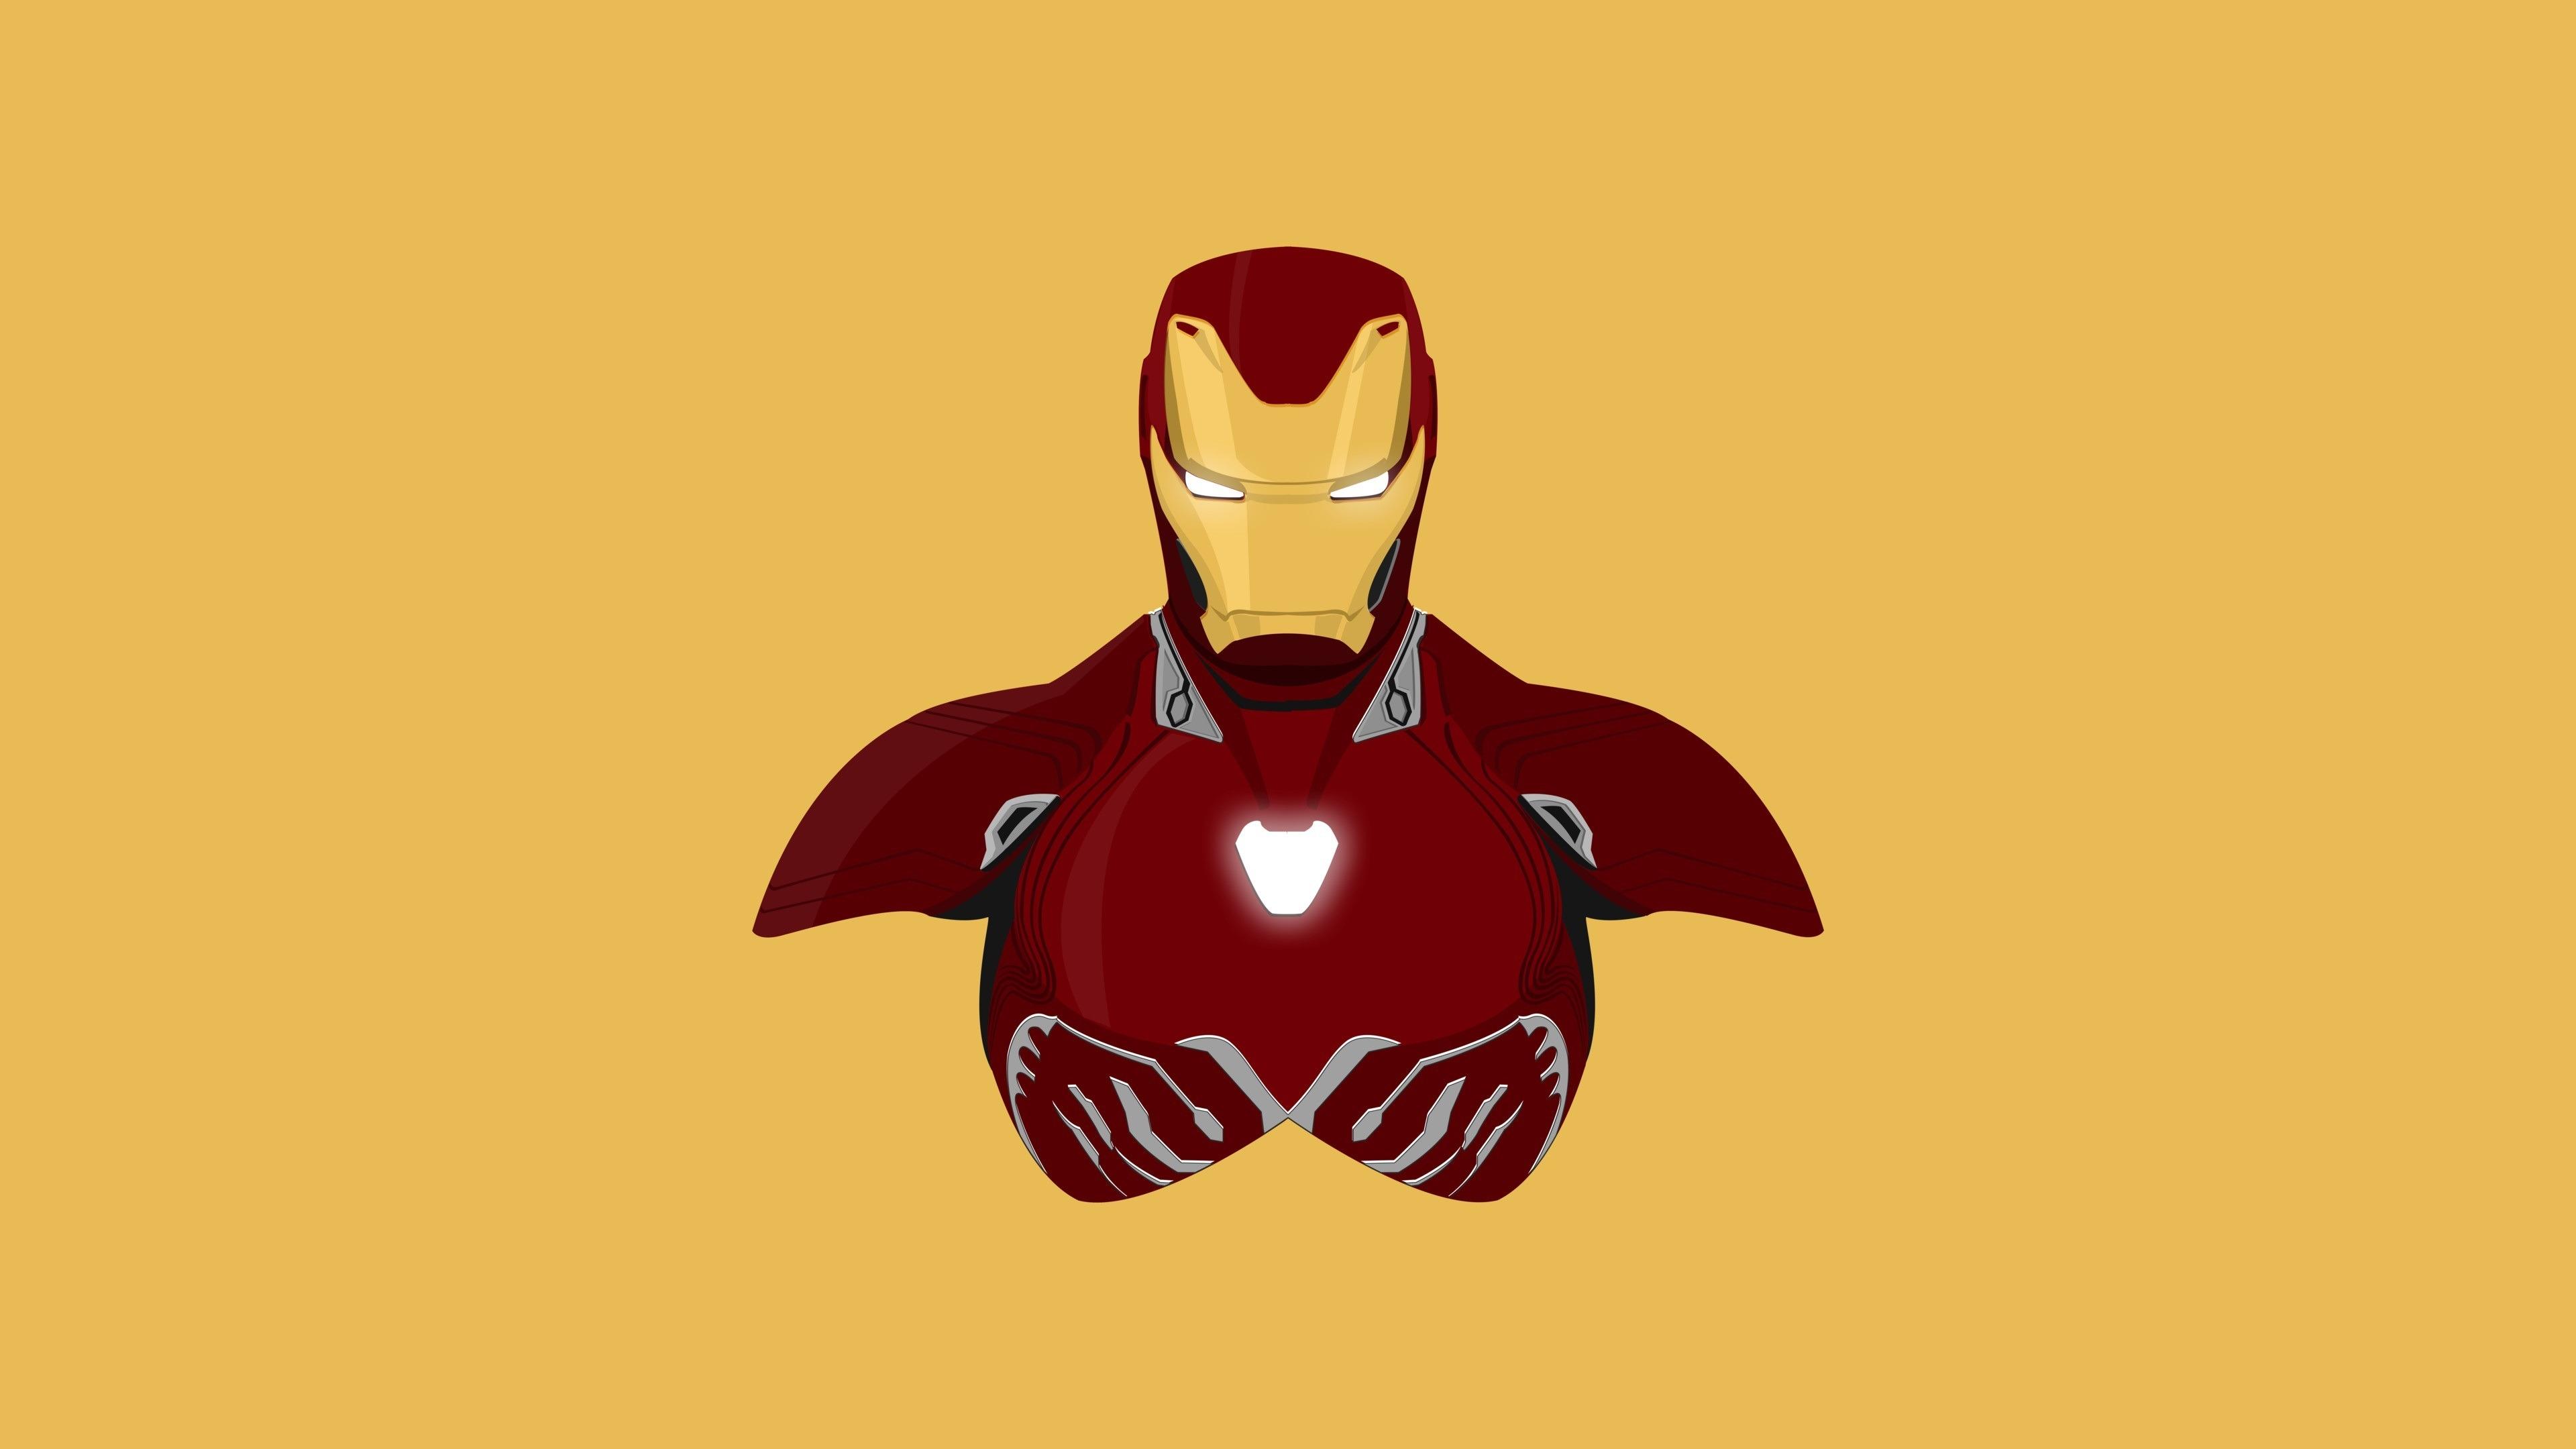 Download 3840x2160 wallpaper iron man, superhero, minimal